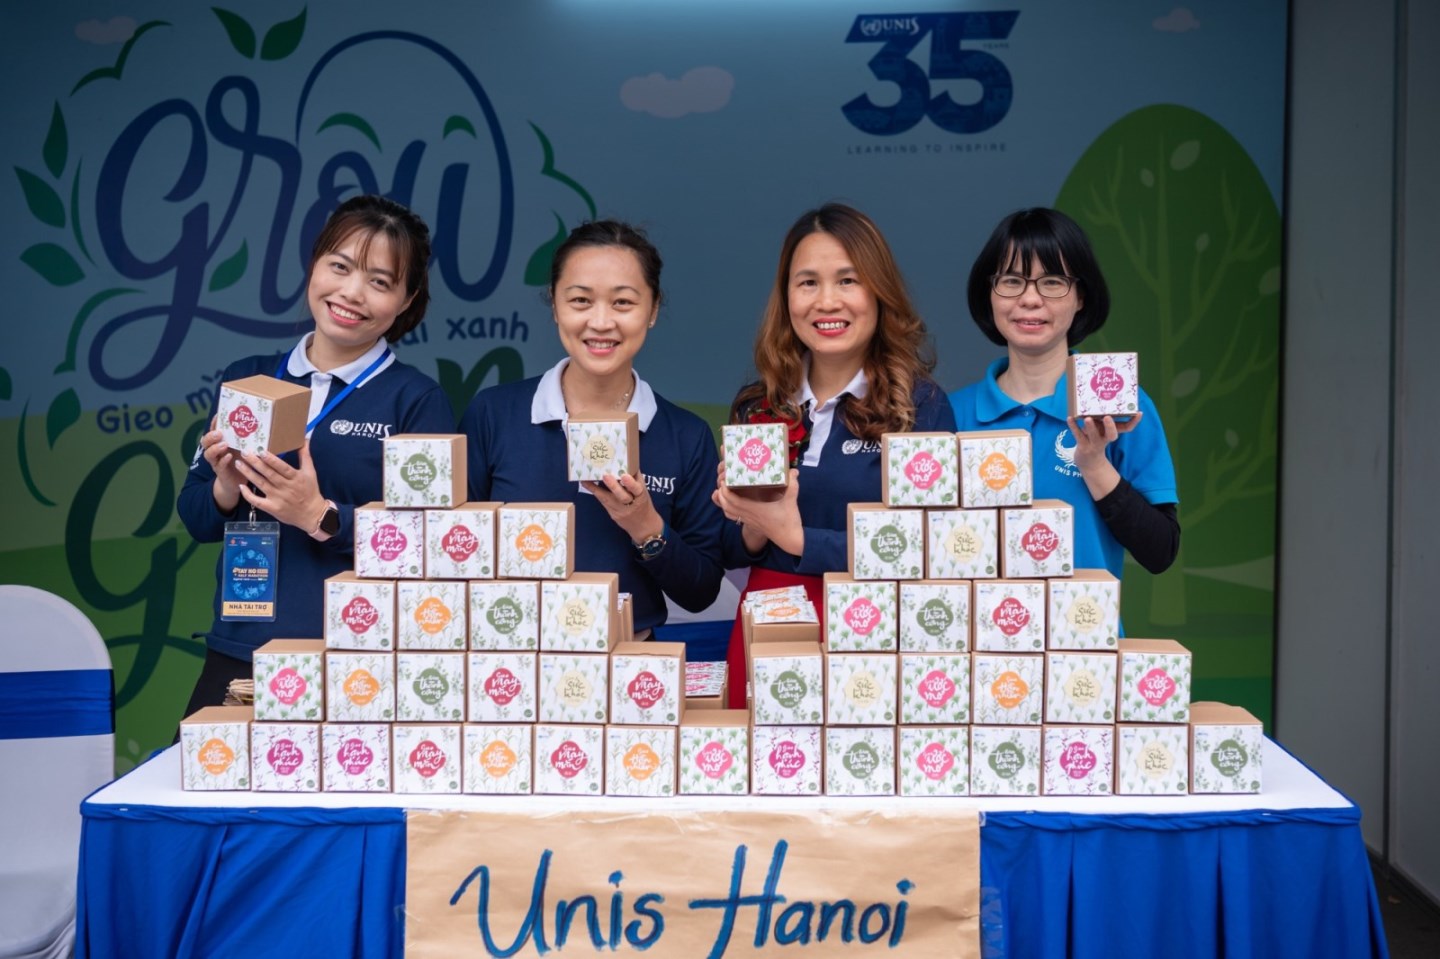 UNIS Hanoi tặng quà hạt giống từ Gieo cho khách tới giải chạy Kids run the Earth 1